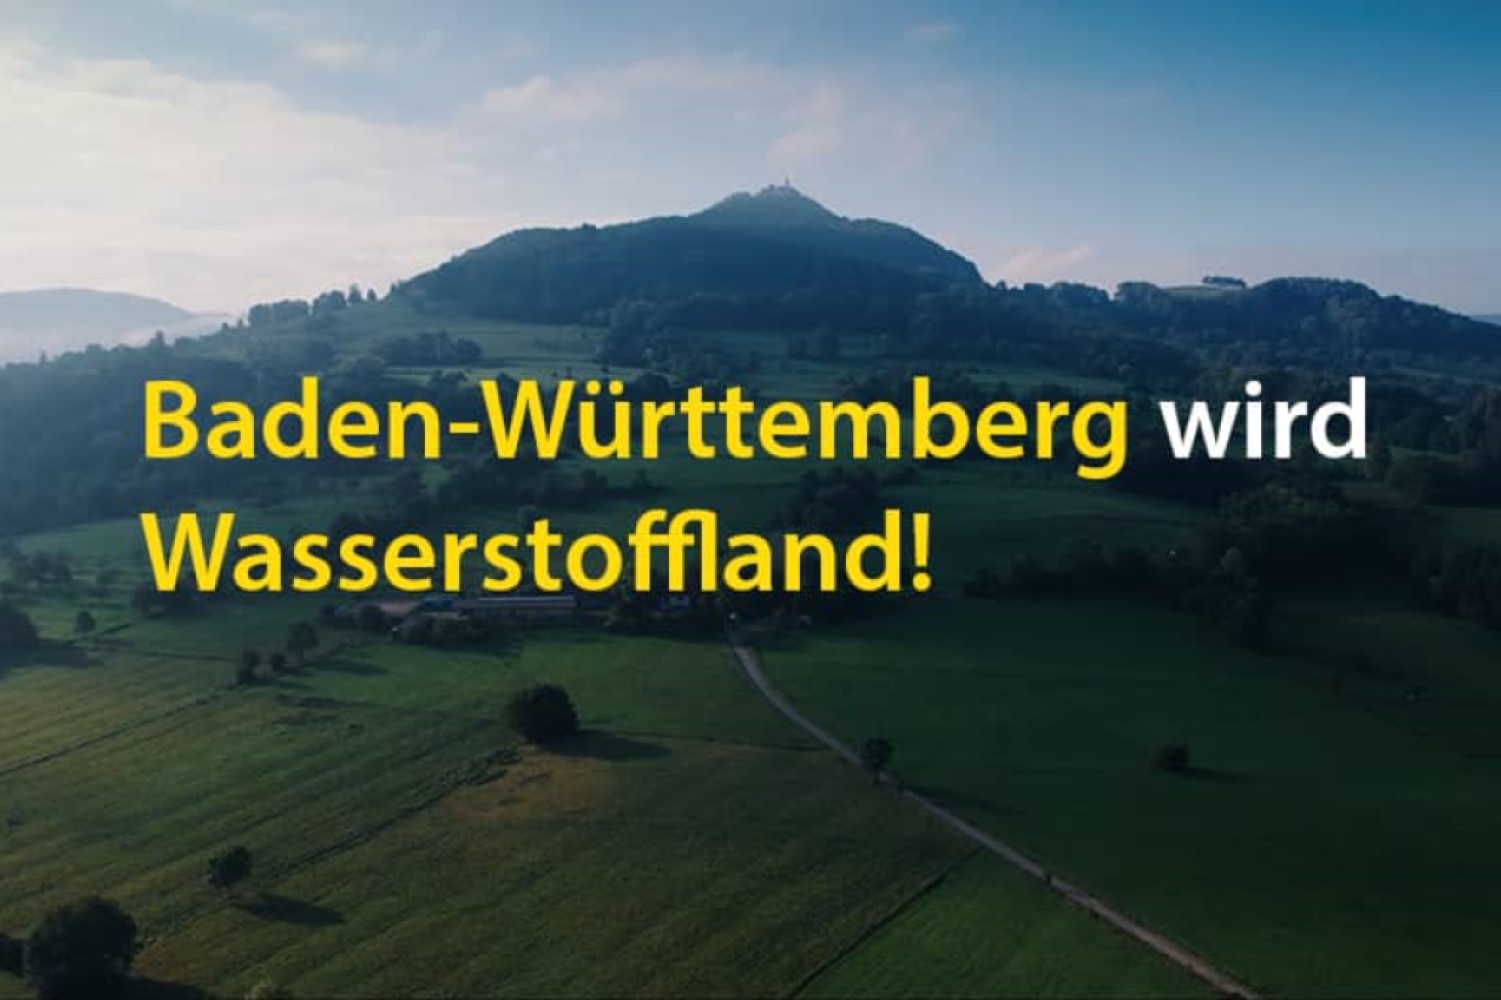 Baden-Württemberg wird Wasserstoffland! Landschaft im Hintergrund